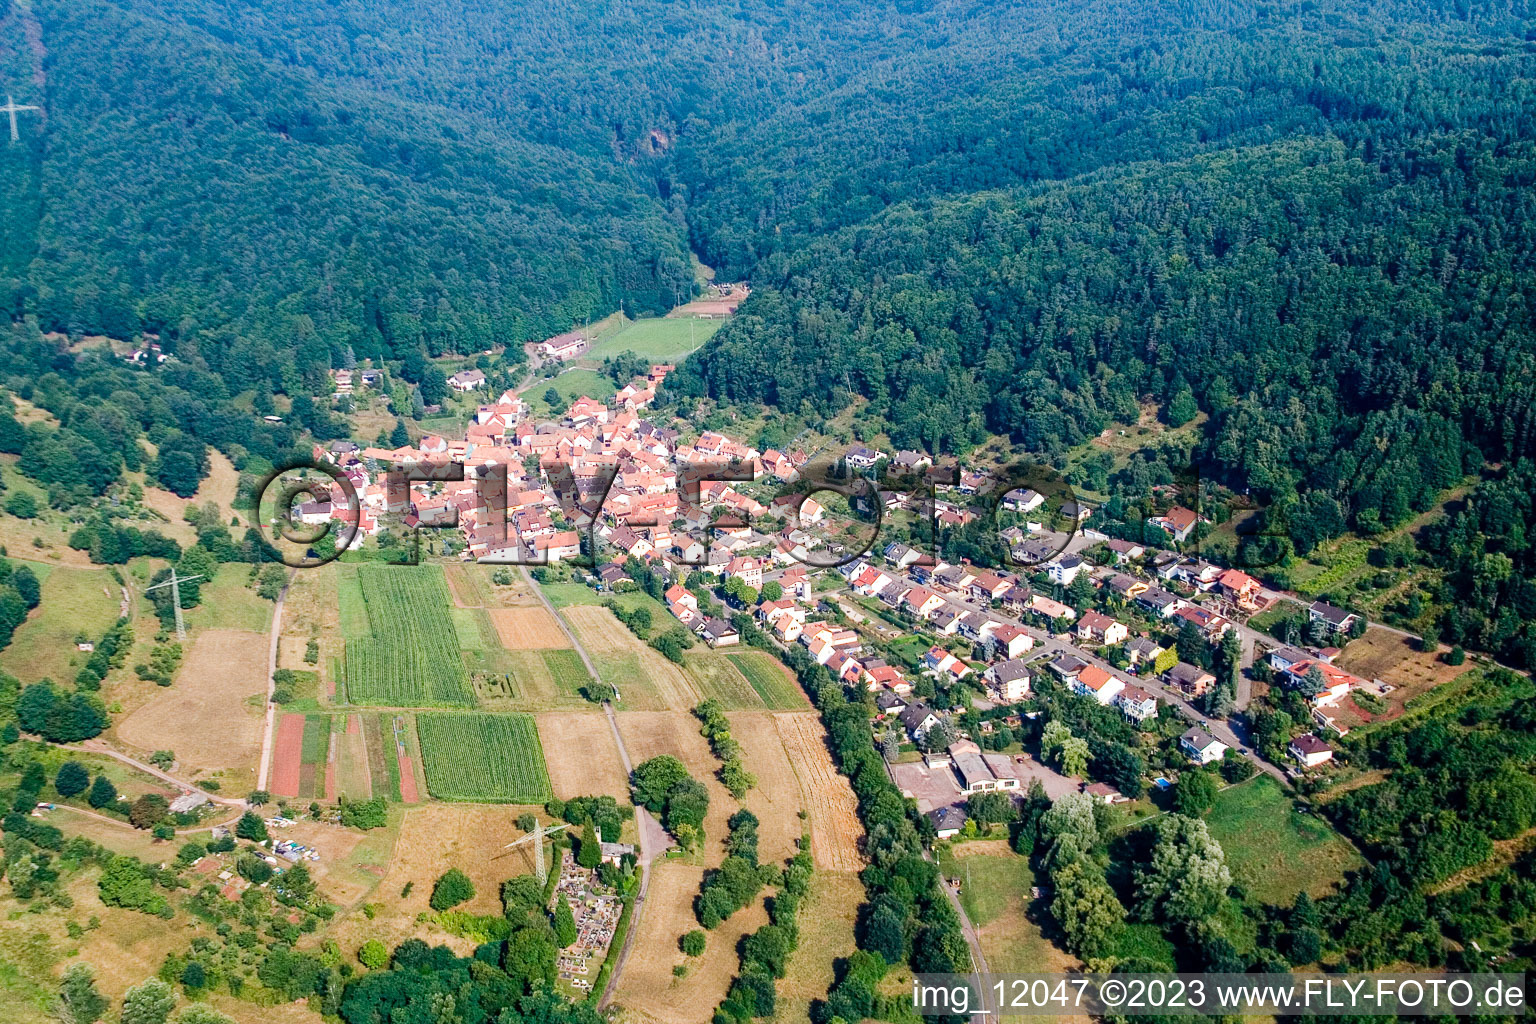 Bird's eye view of District Gräfenhausen in Annweiler am Trifels in the state Rhineland-Palatinate, Germany